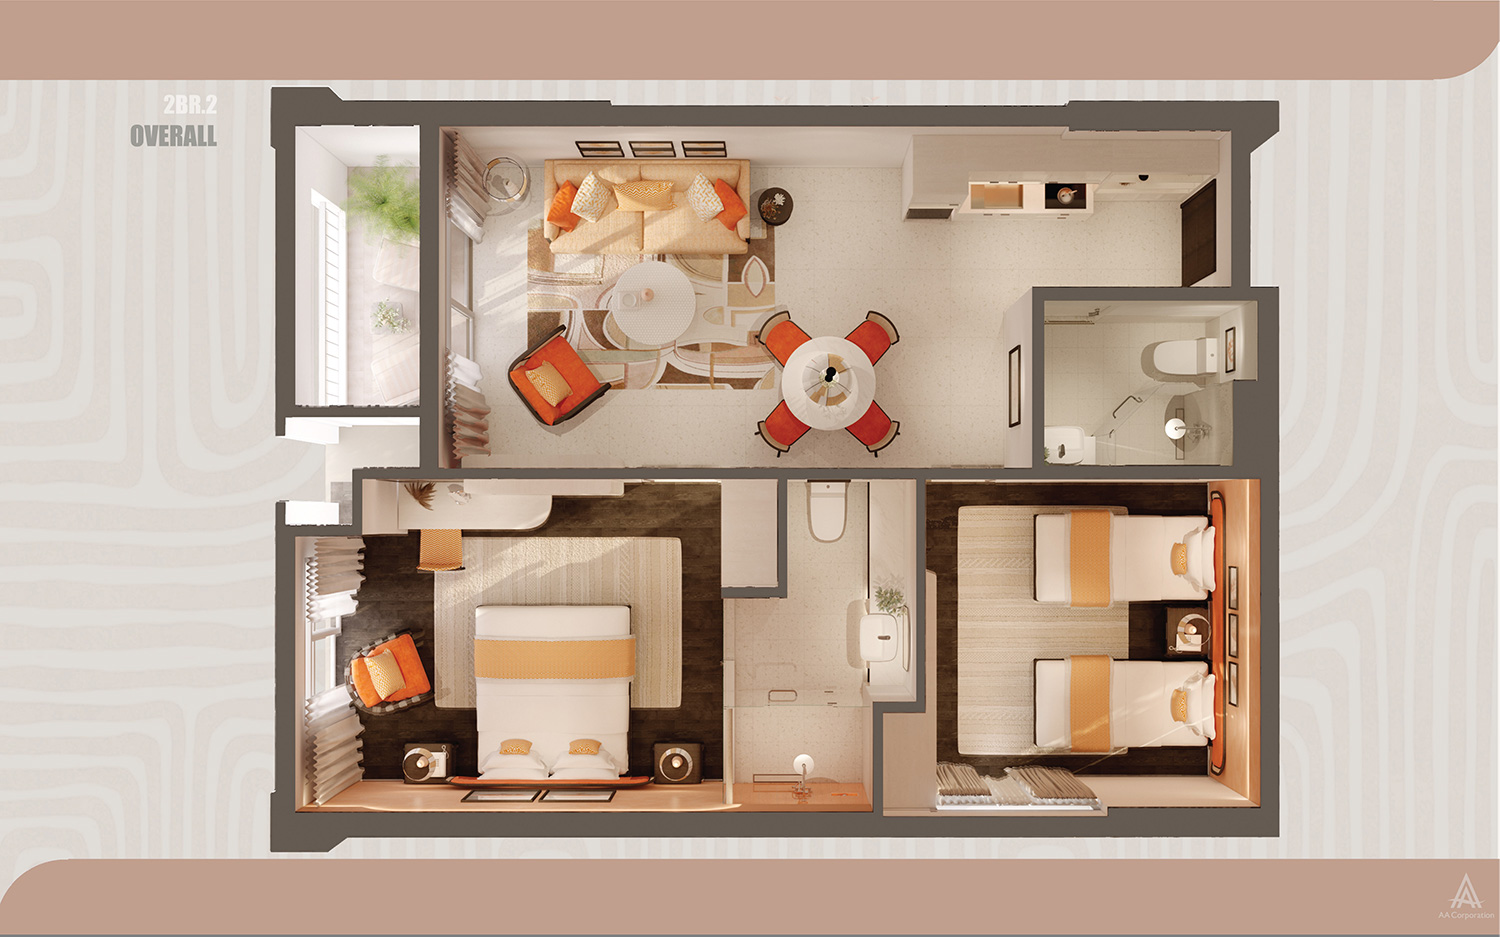 Thiết kế căn hộ Hillside theo kiến trúc Santorini phong vị Địa Trung Hải đa dạng các loại phòng 1 ngủ, 2 ngủ, dual-key